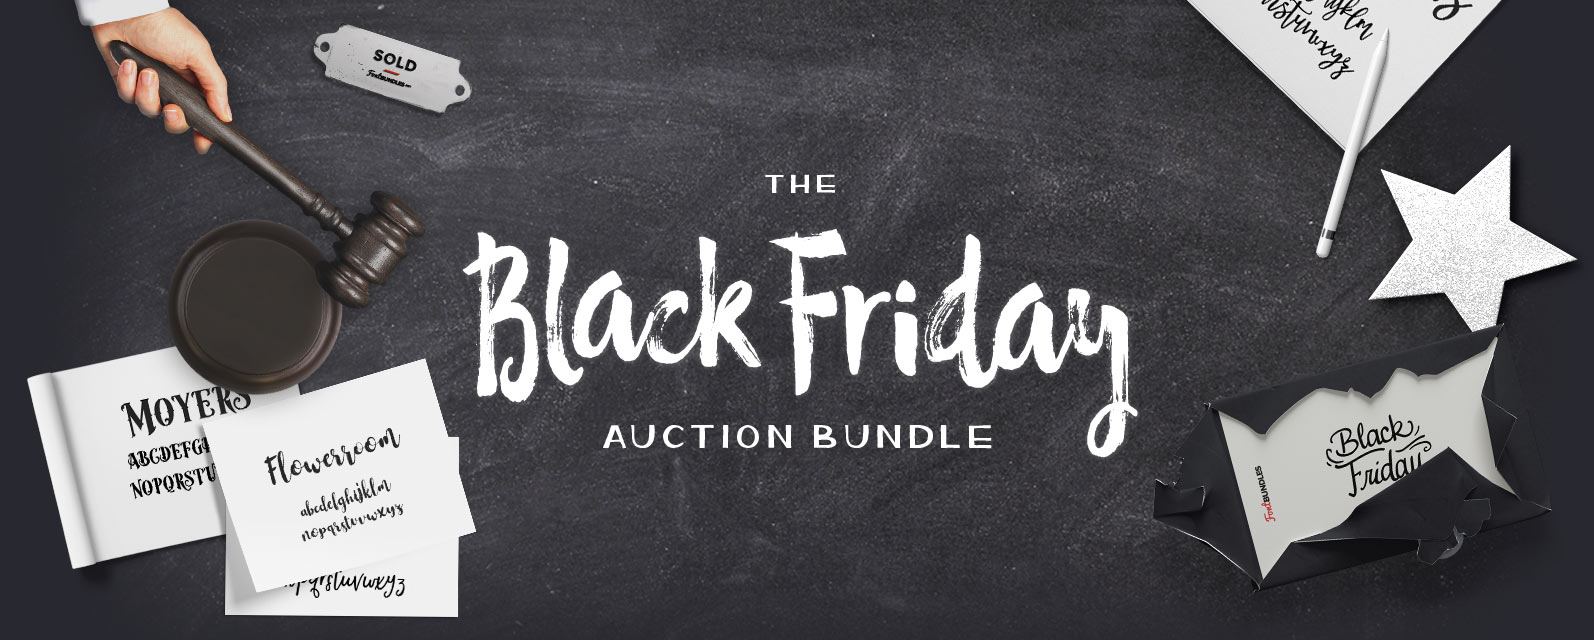 Black Friday Auction Bundle Cover